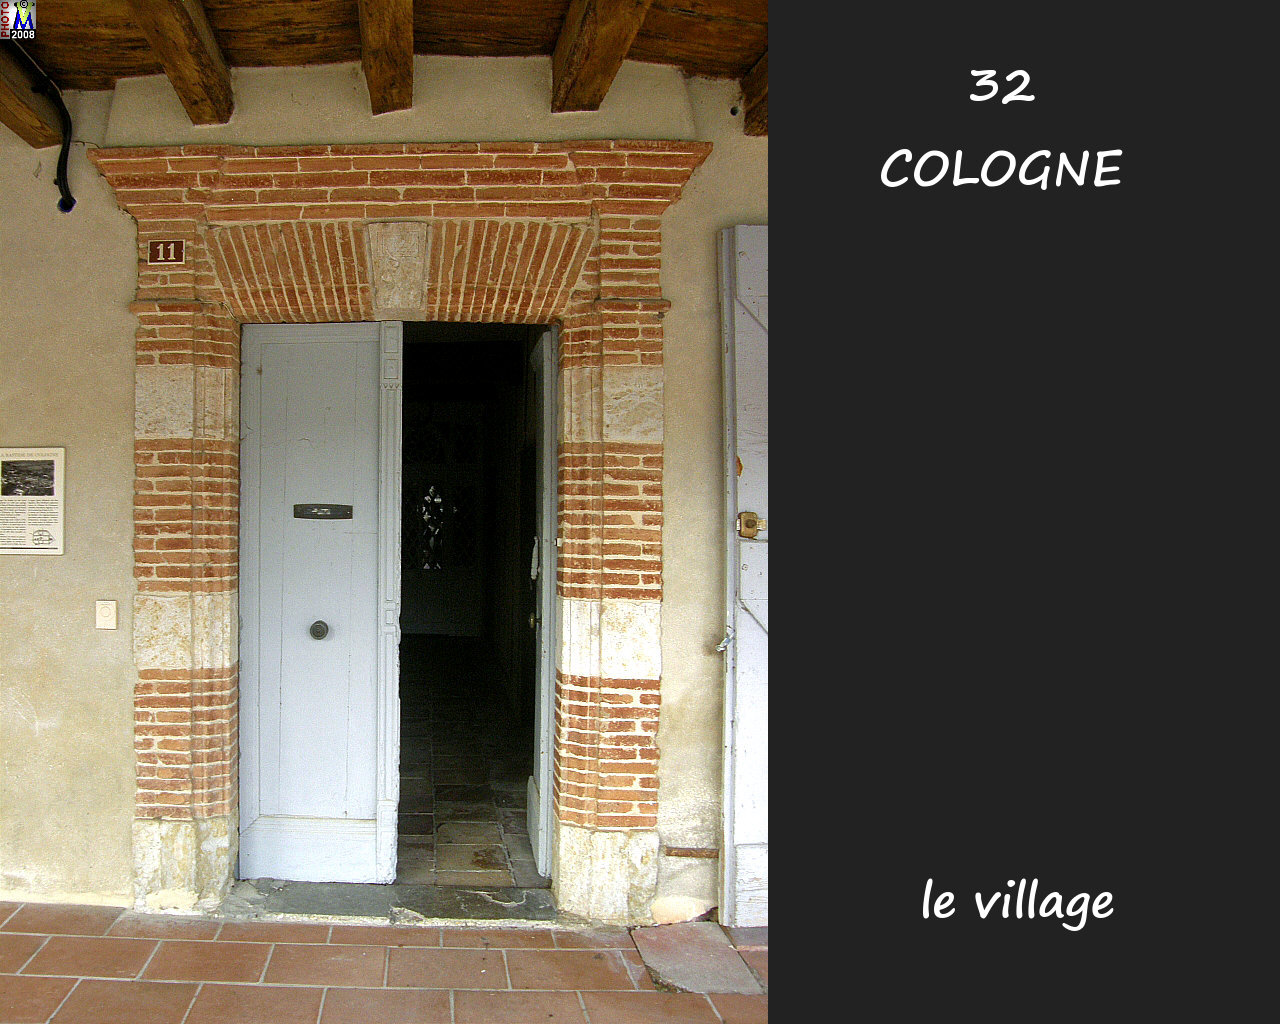 32COLOGNE_village_186.jpg